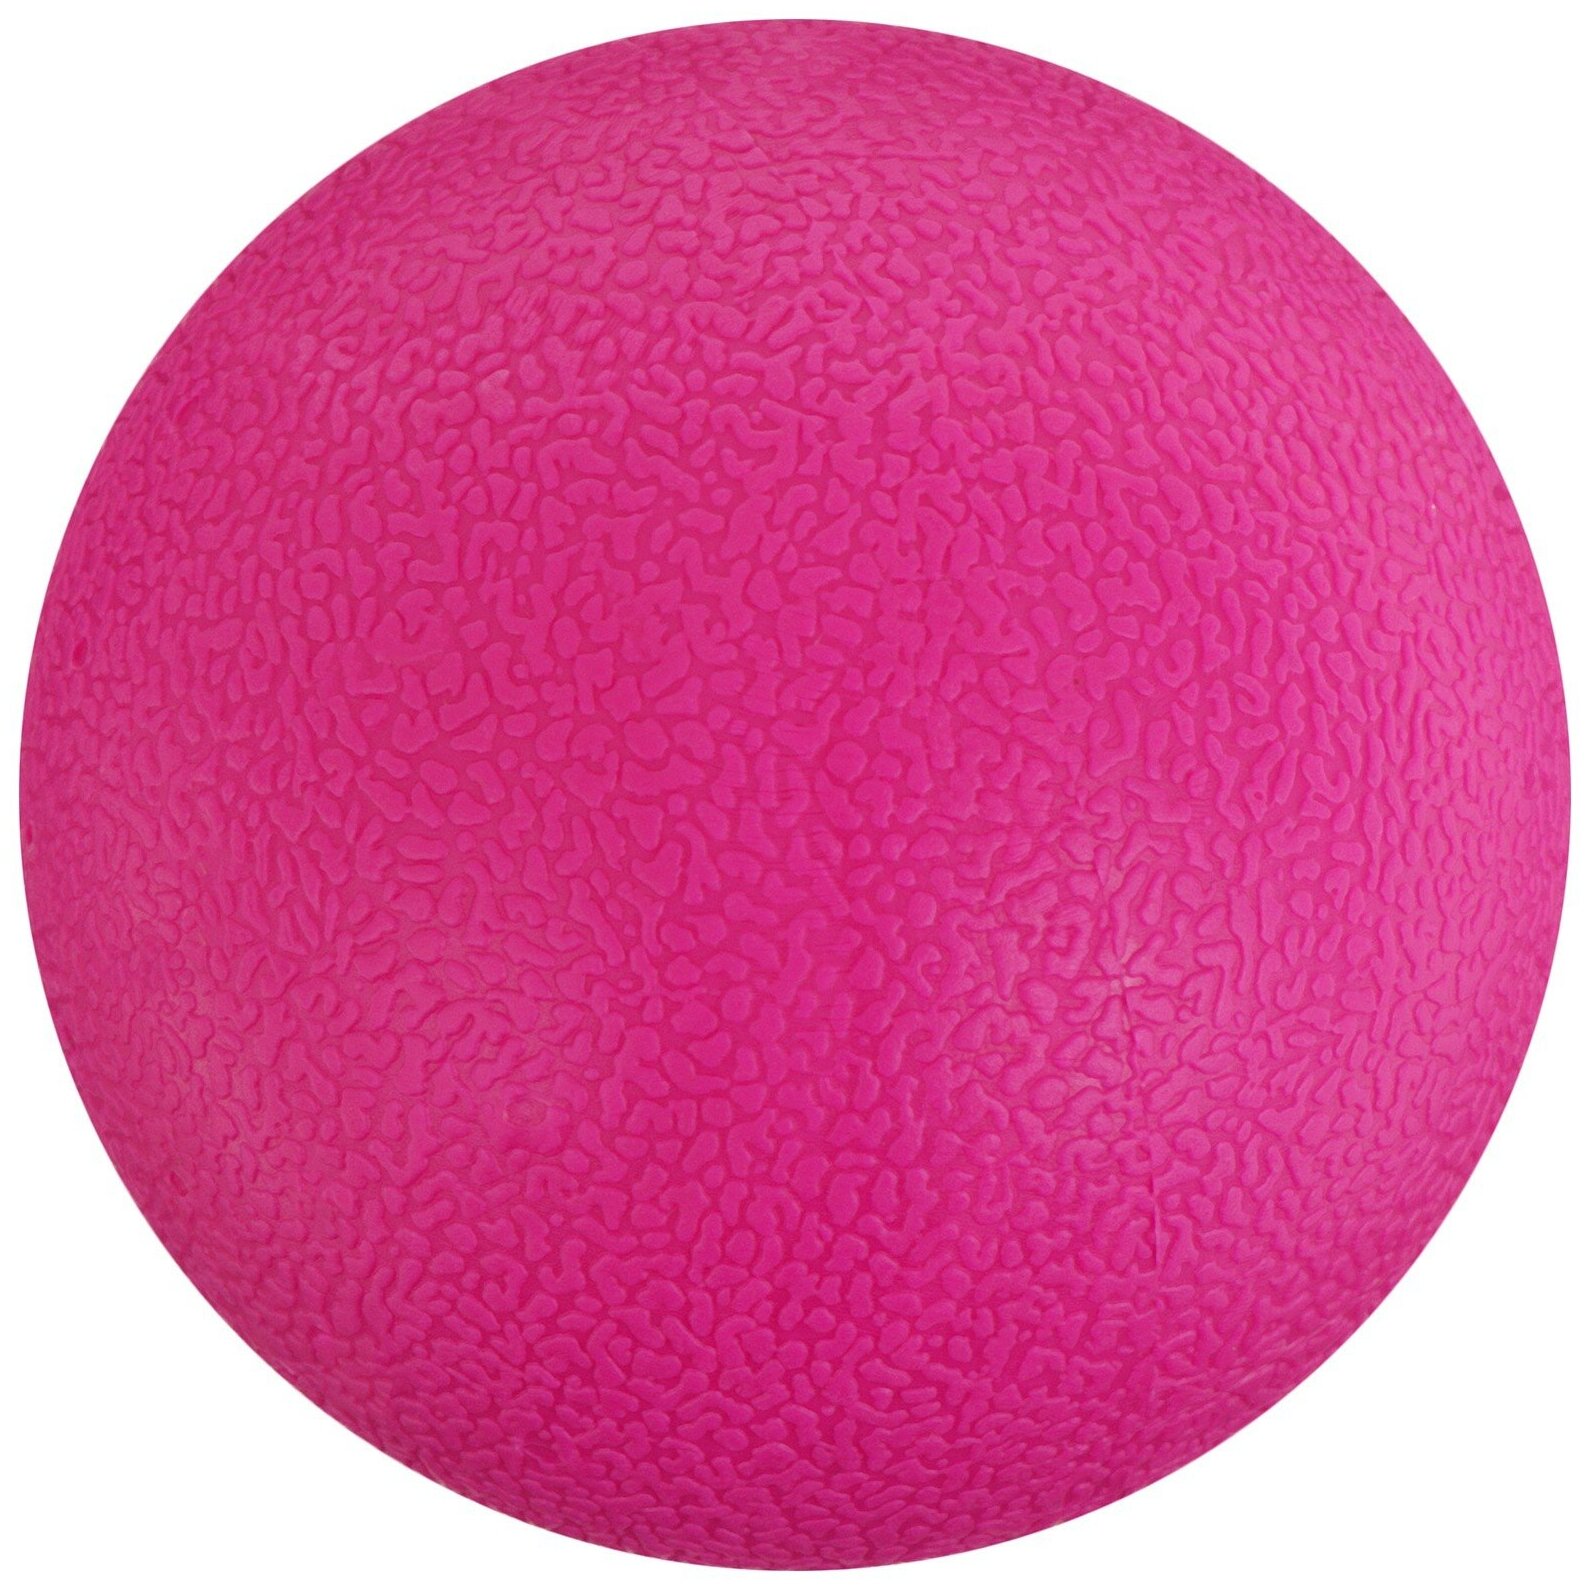 Мяч массажный, диаметр 6 см, вес 140 г, цвет микс